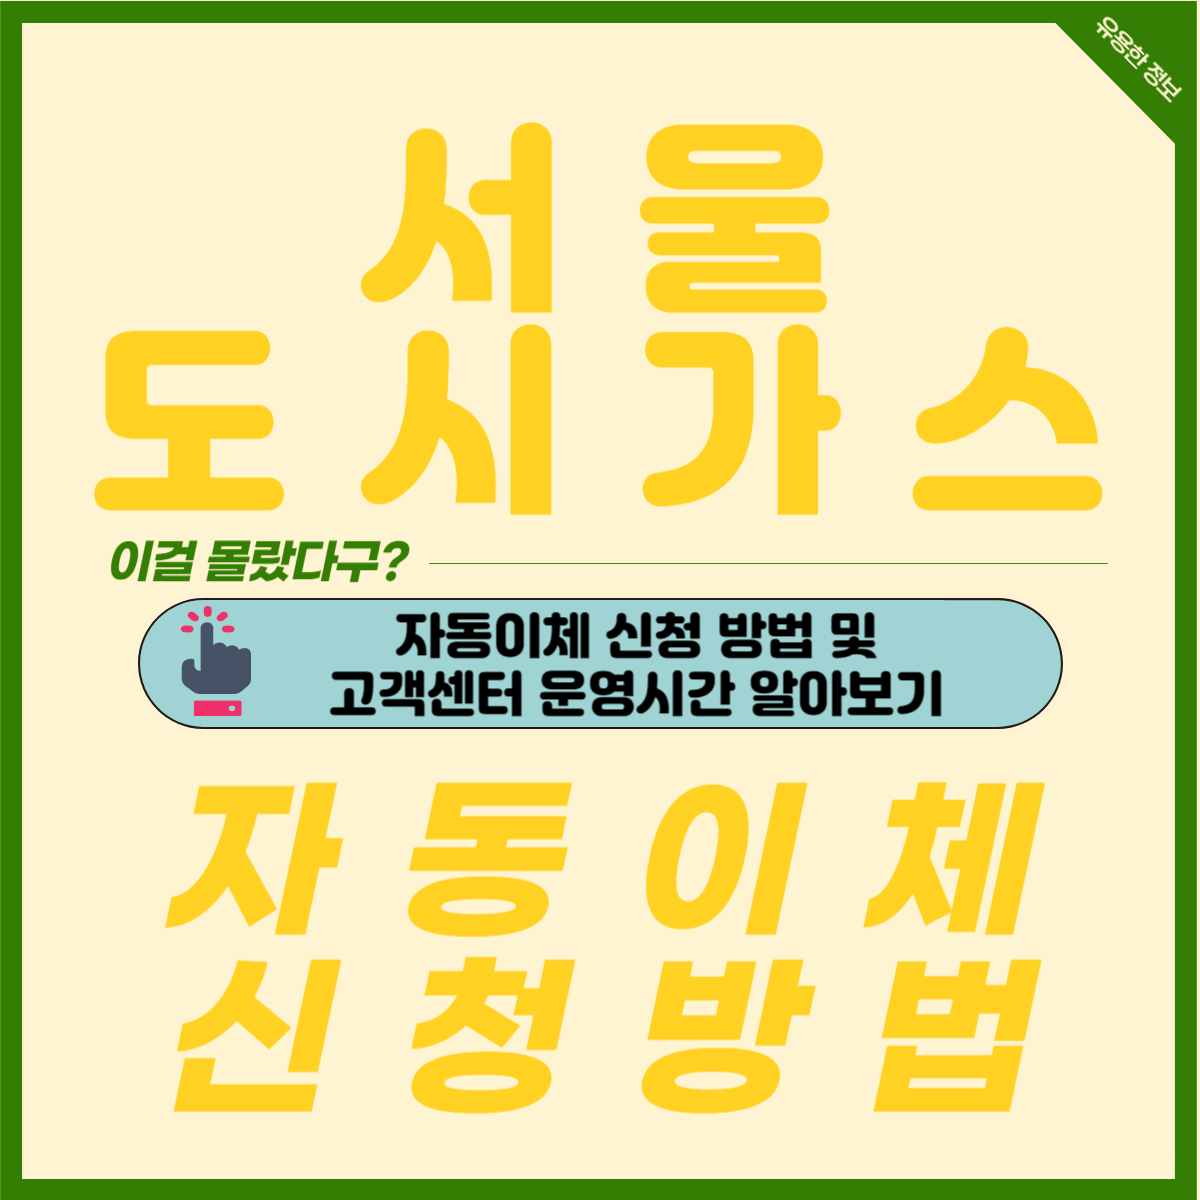 서울 도시가스 자동이체 신청 방법 및 고객센터 전화번호 운영시간